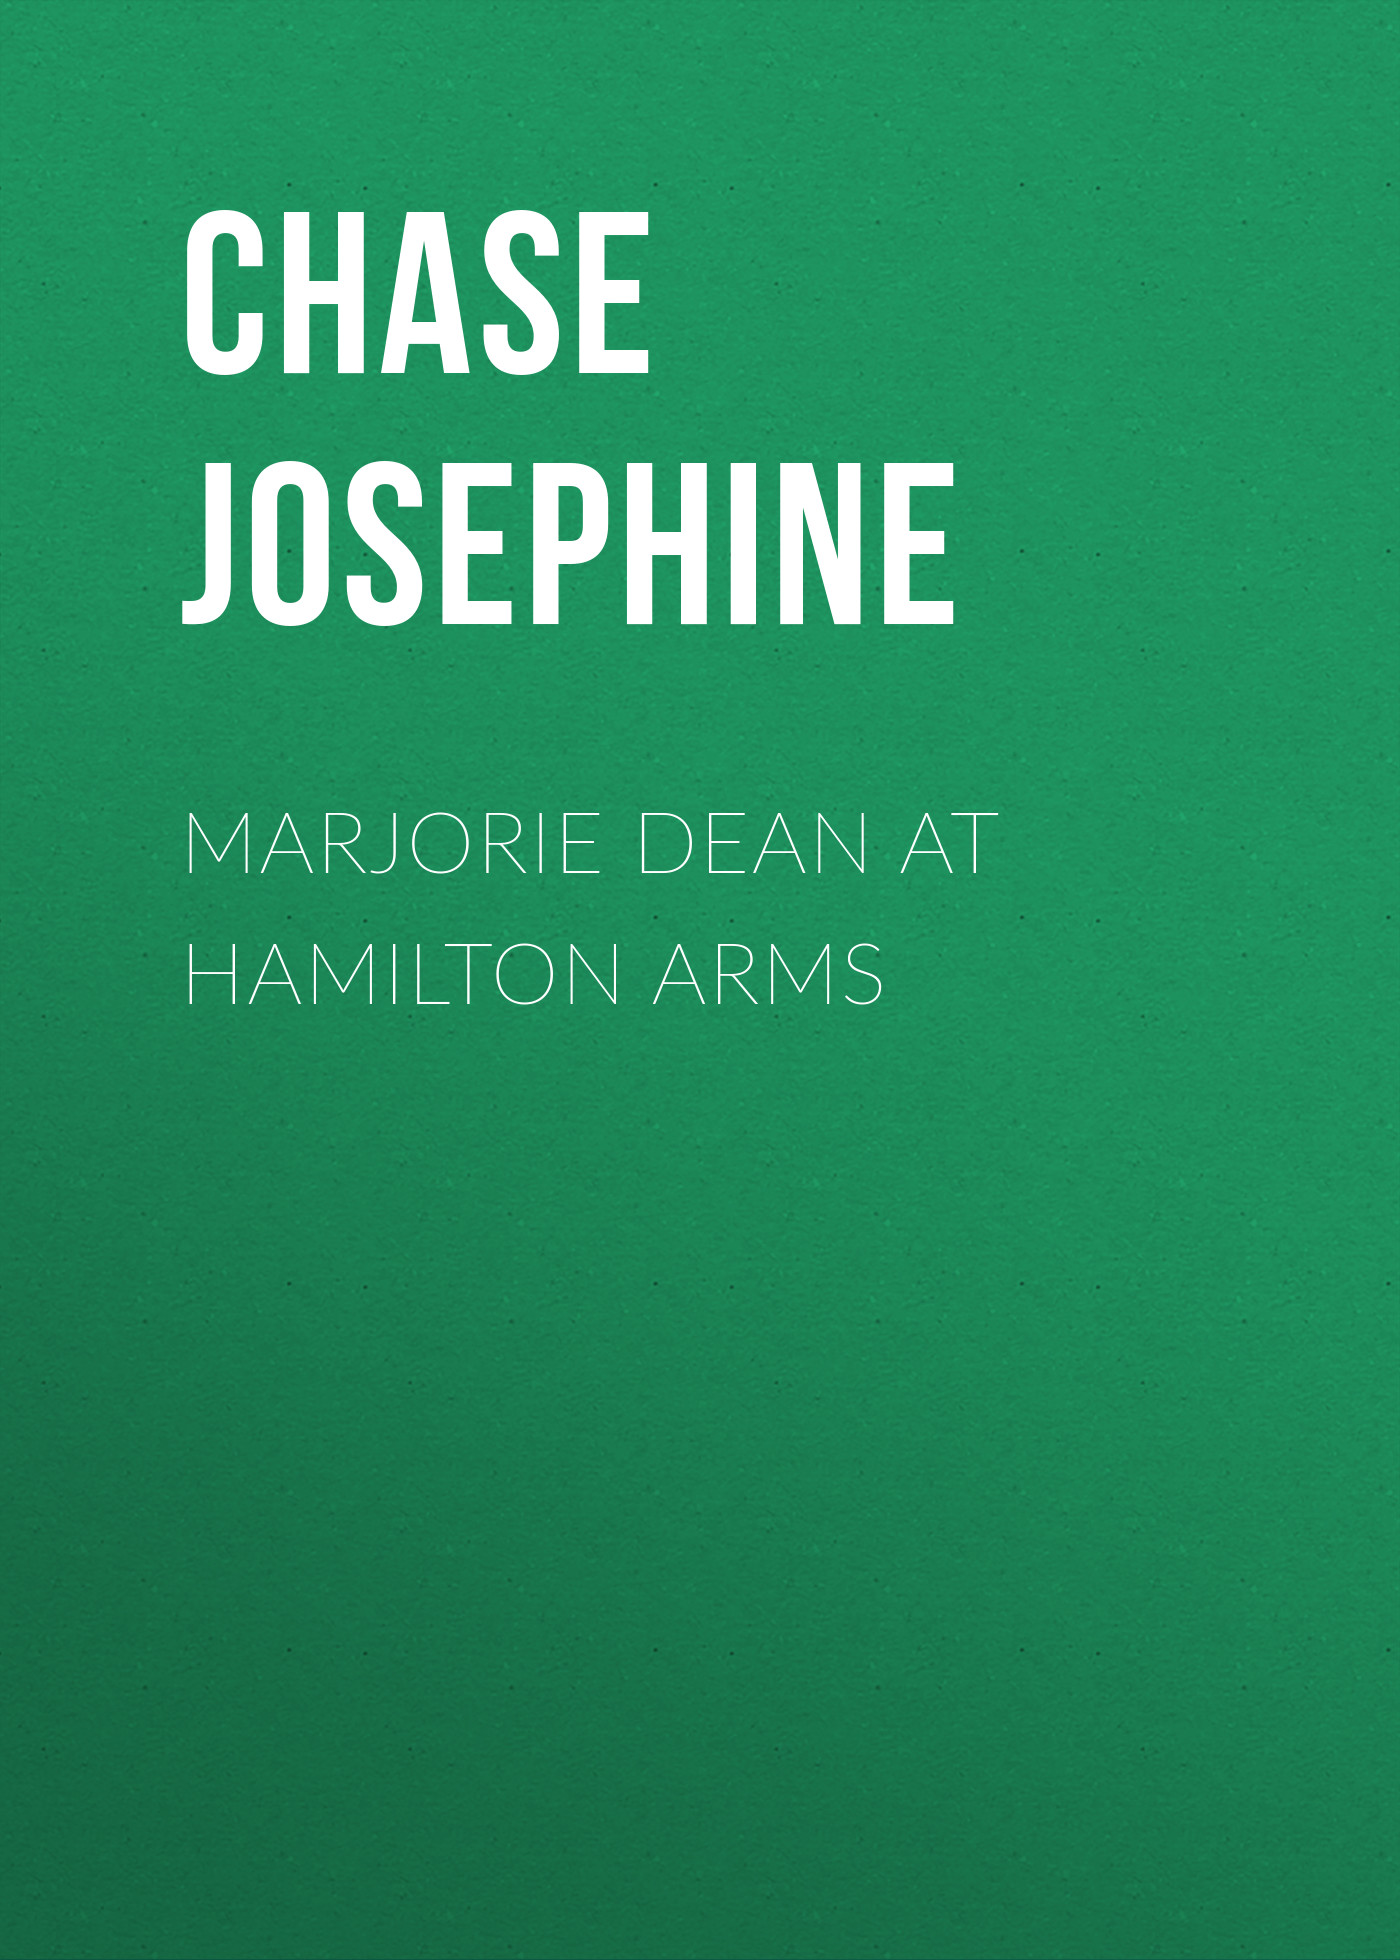 Книга Marjorie Dean at Hamilton Arms из серии , созданная Chase Josephine, может относится к жанру Зарубежная классика. Стоимость электронной книги Marjorie Dean at Hamilton Arms с идентификатором 23166939 составляет 5.99 руб.